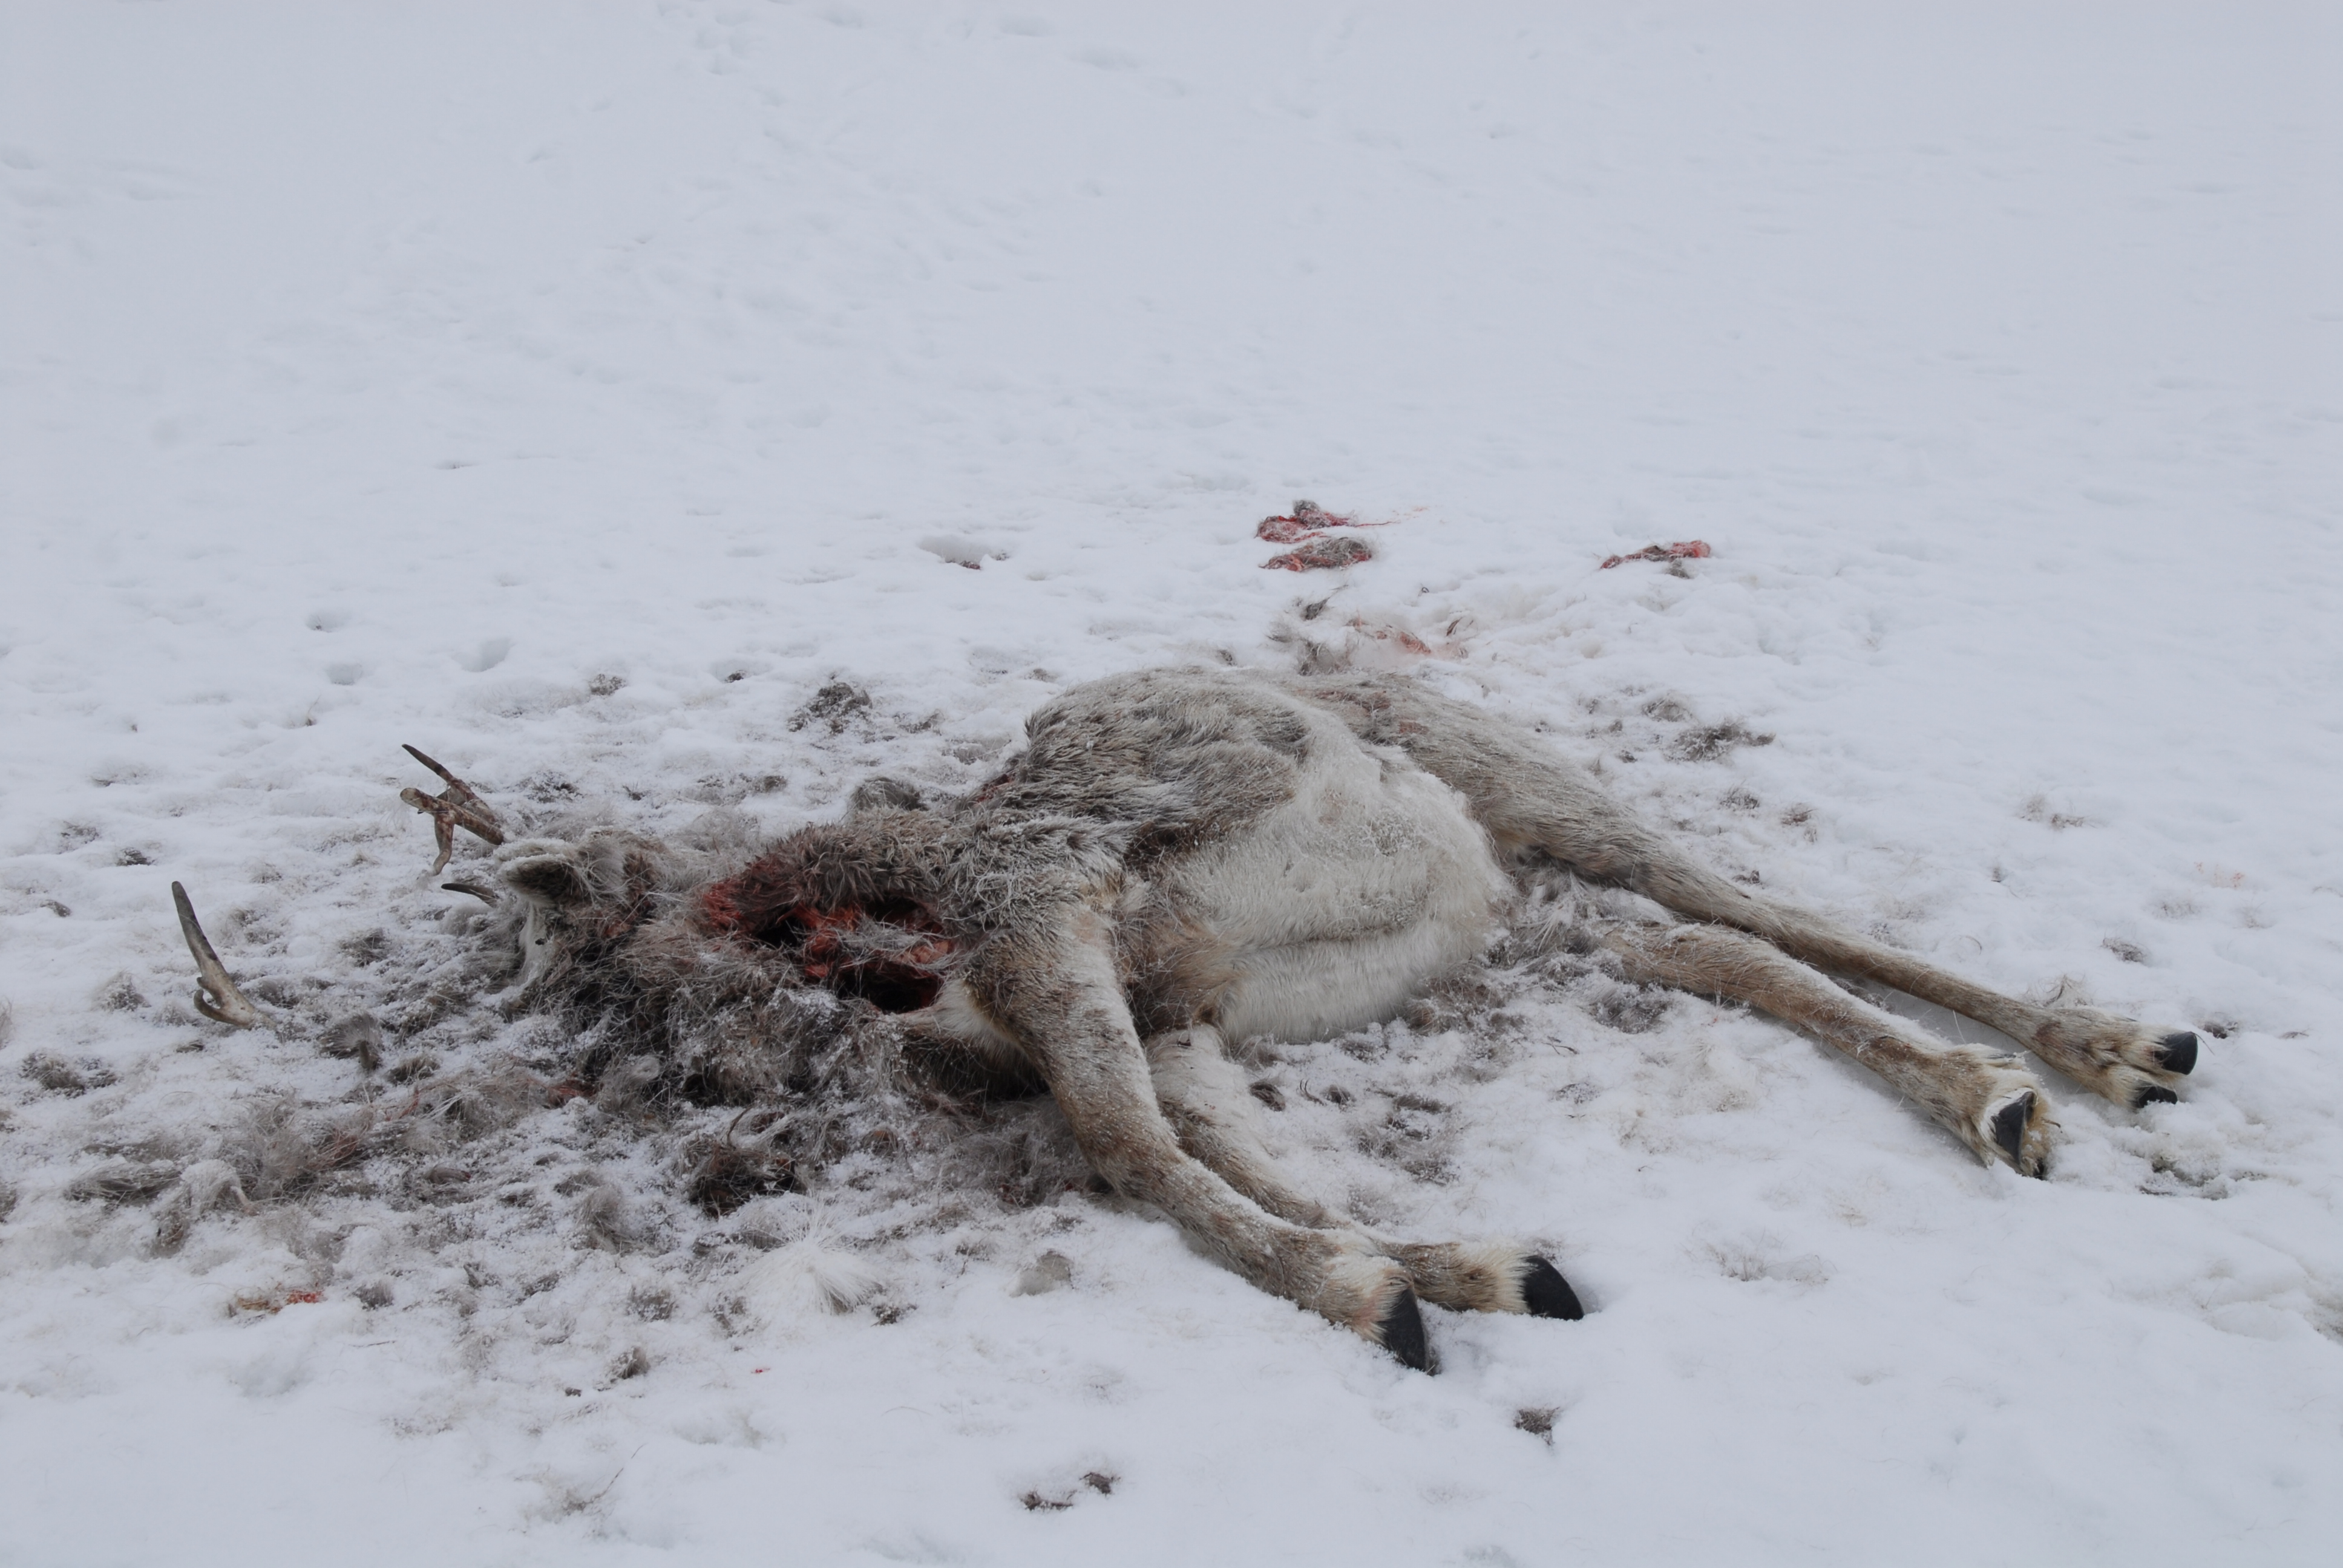 død rein liggende på snø